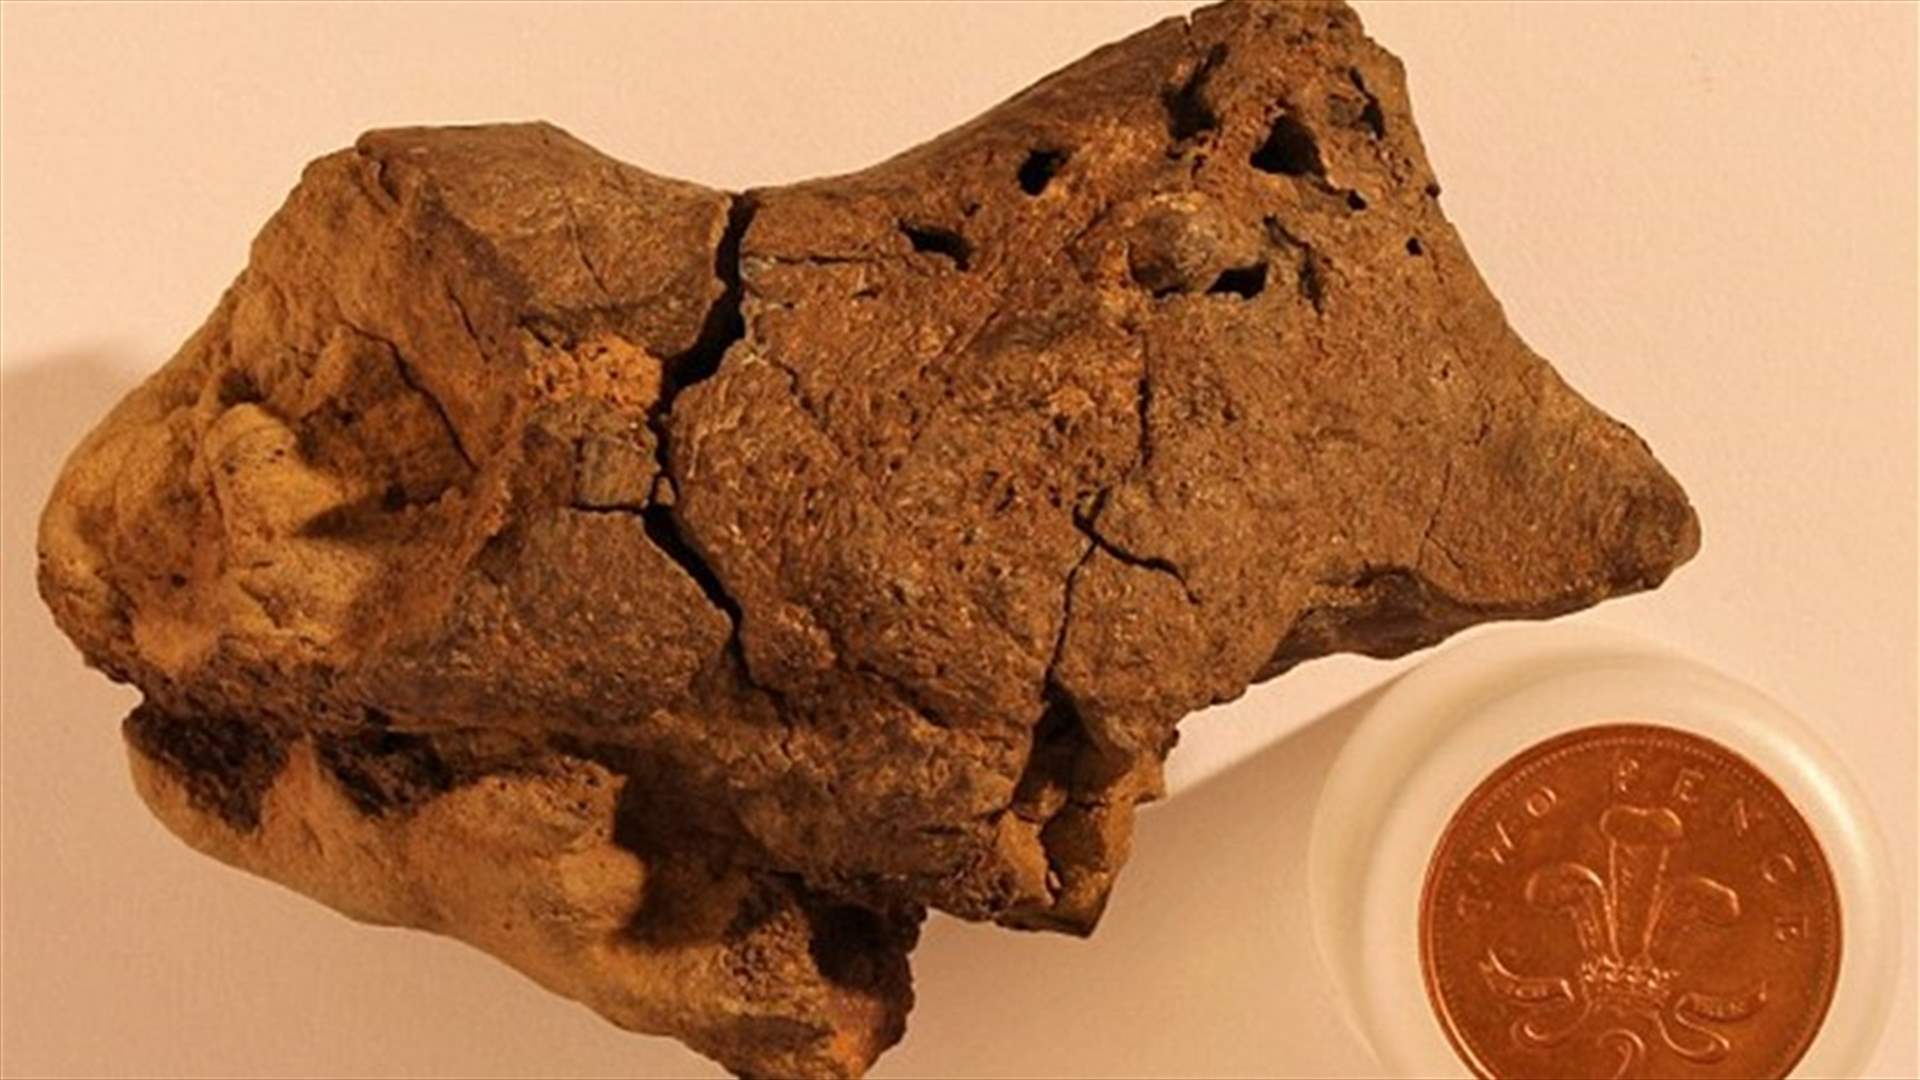 دماغ ديناصور عمره أكثر من 130 مليون سنة يكشف حقيقة علمية جديدة!